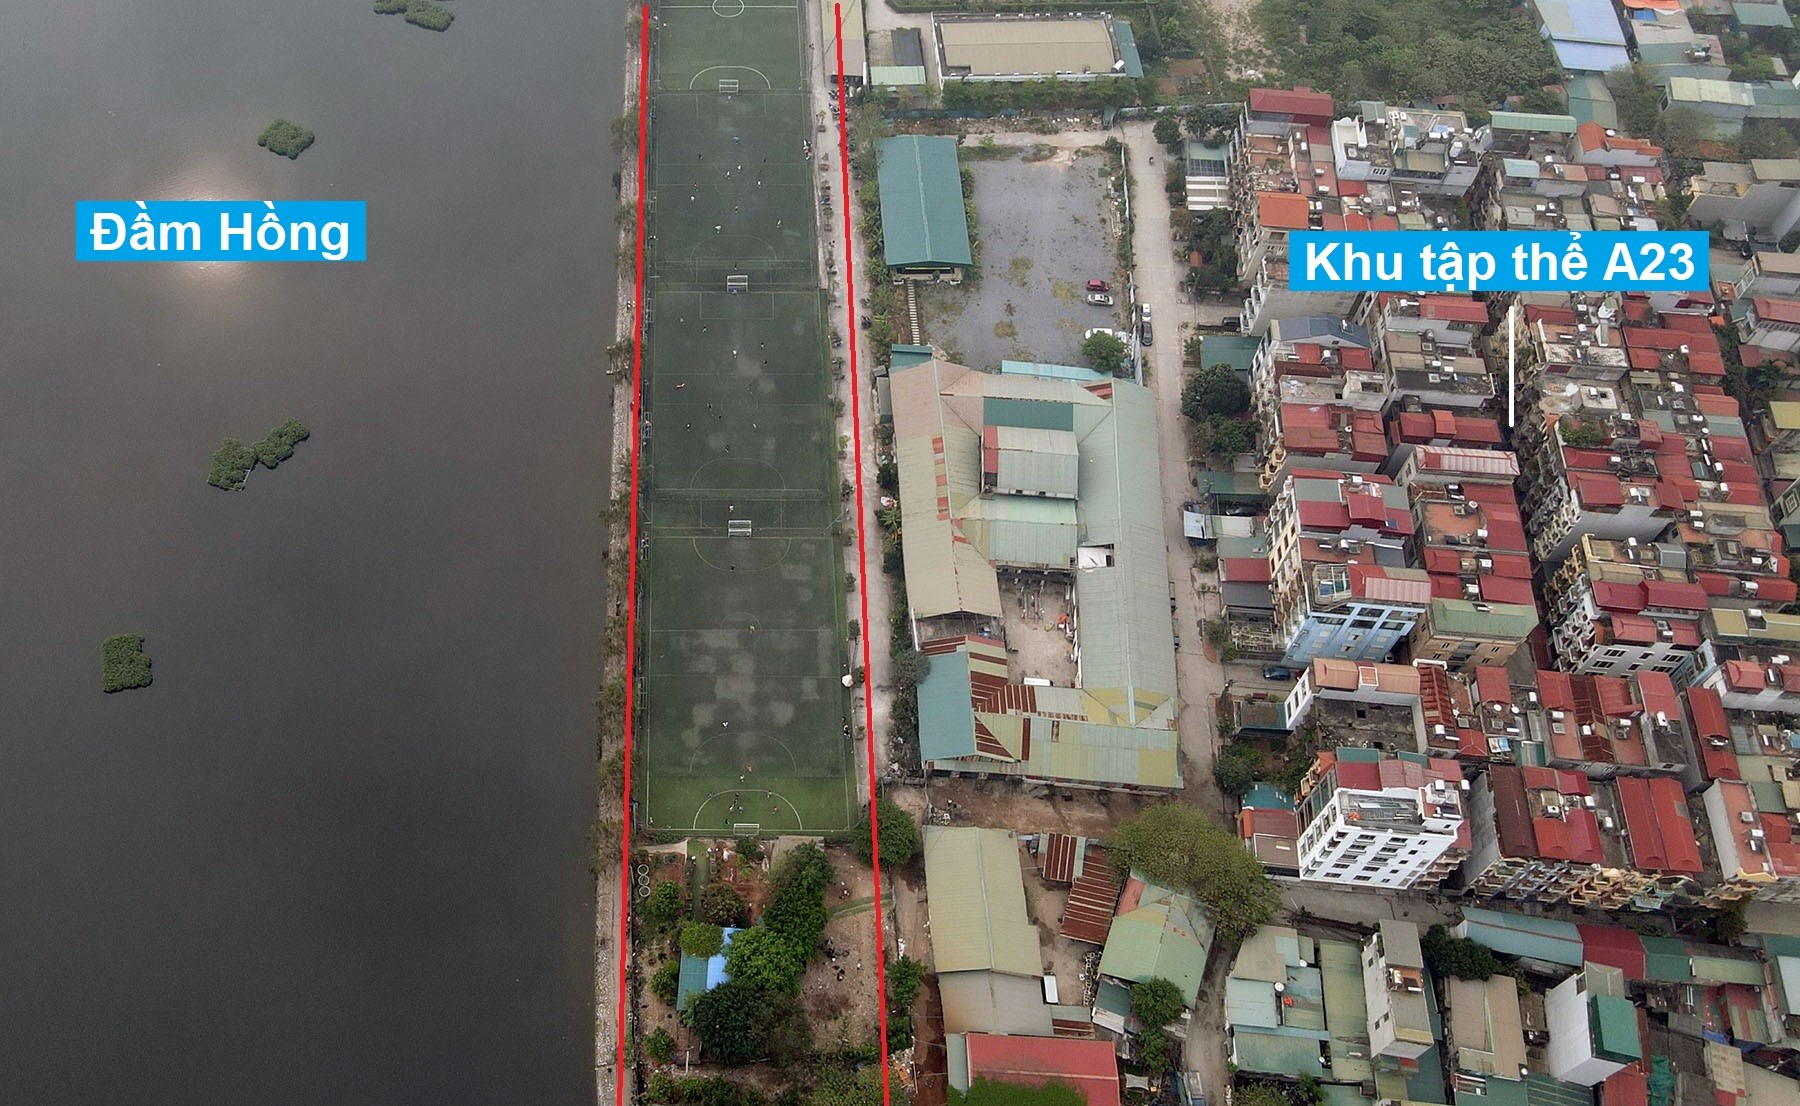 Những khu đất có thể thu hồi để làm vành đai 2,5 đoạn Nguyễn Trãi - Đầm Hồng vừa được Hà Nội duyệt đầu tư